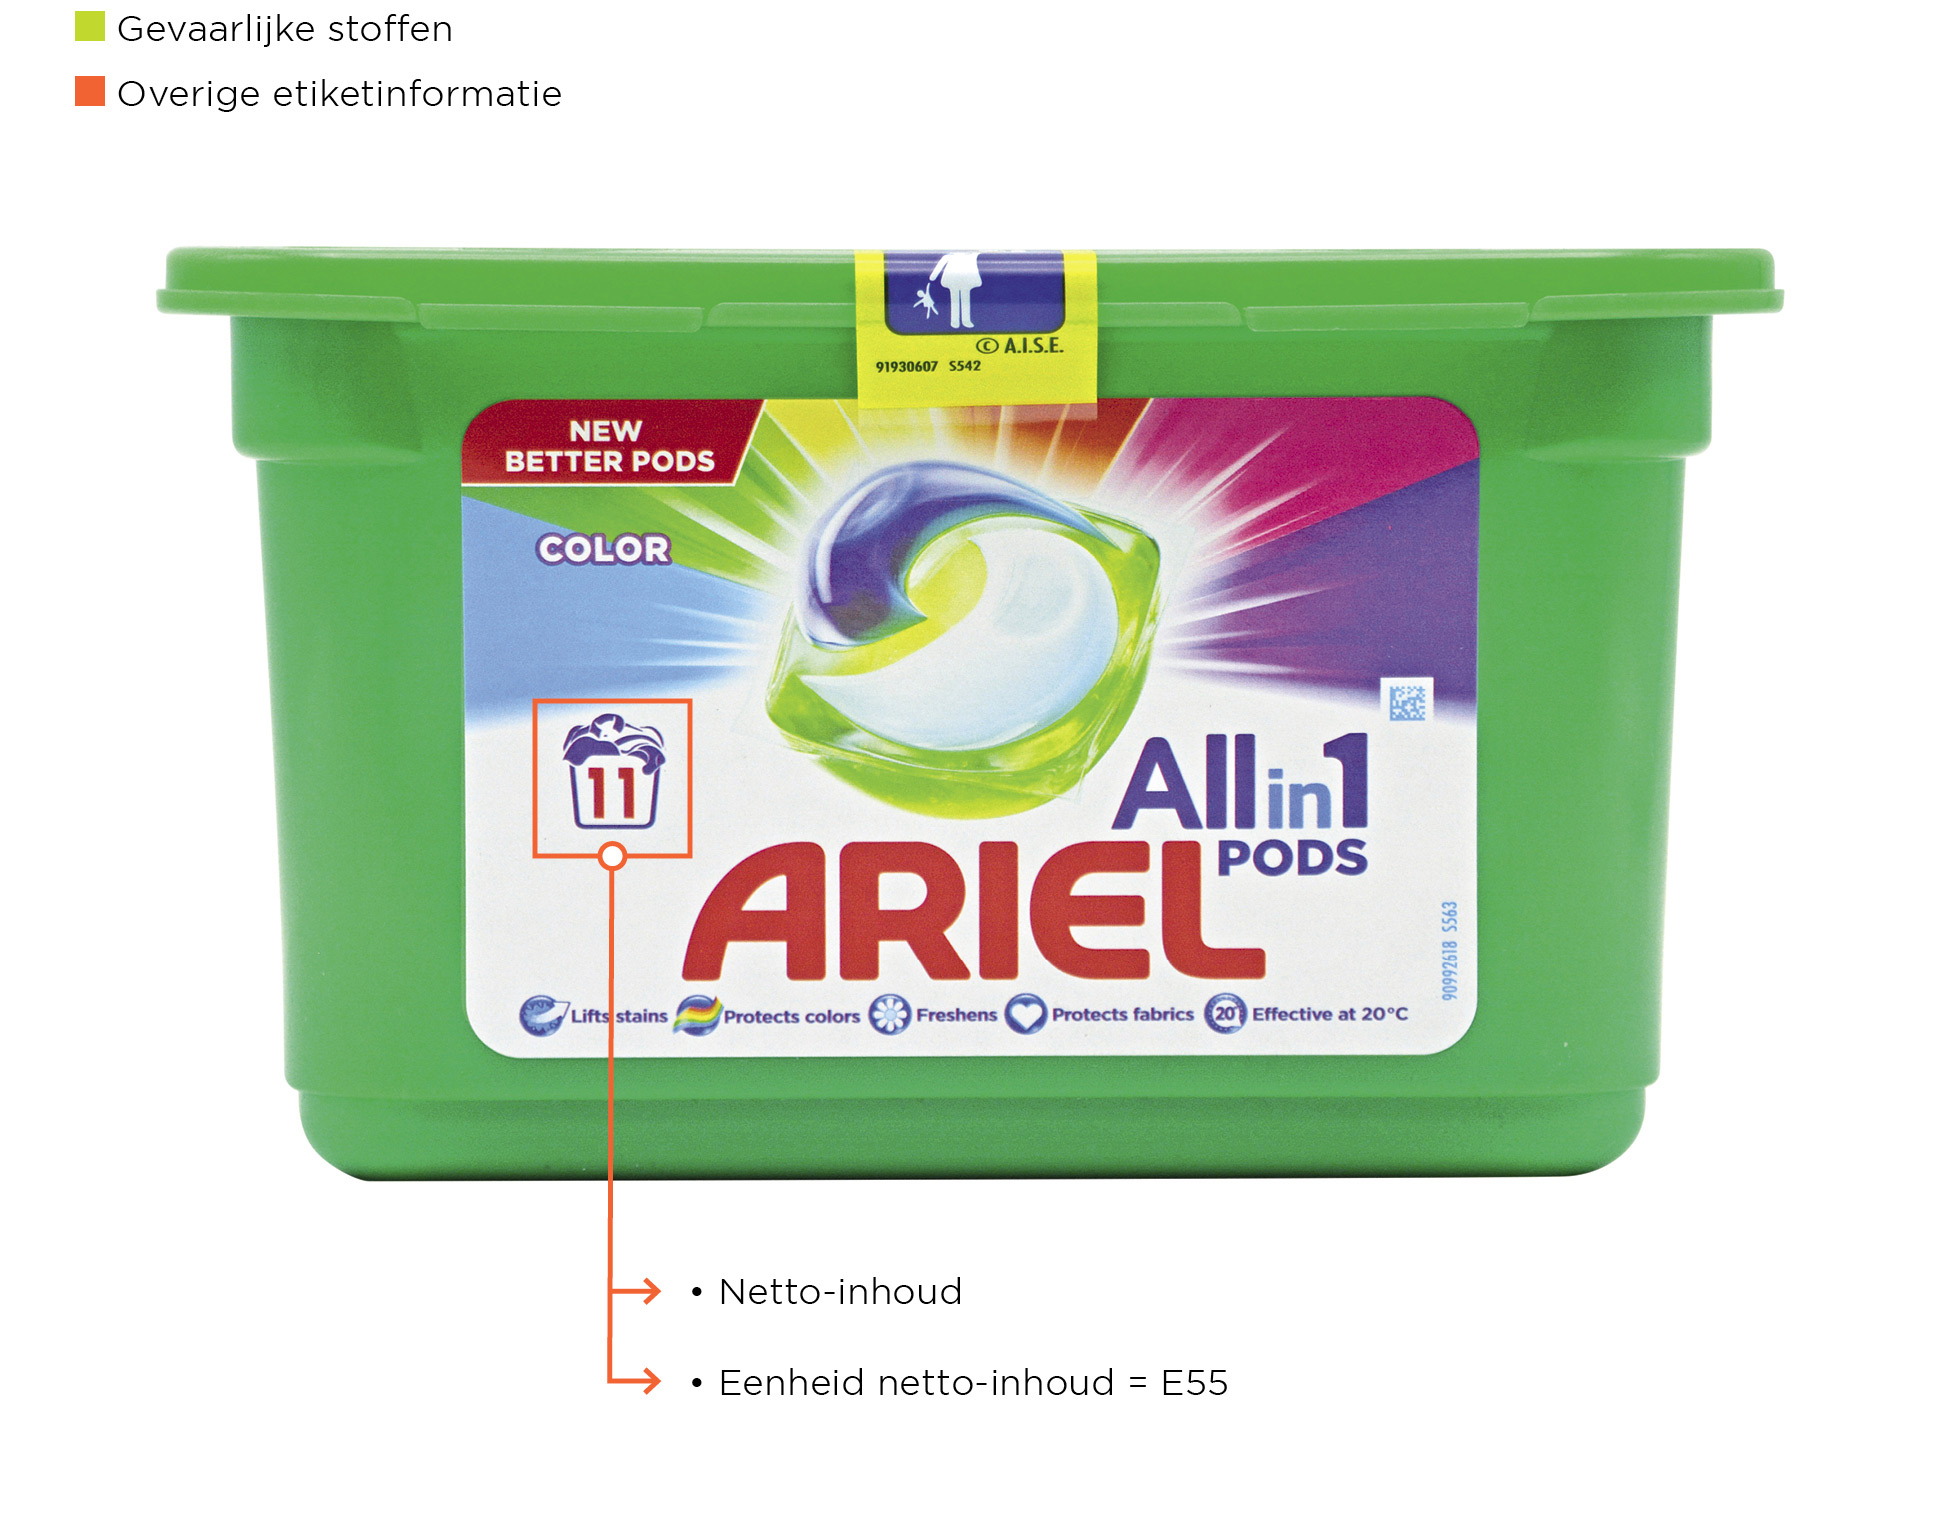 Etiketvelden Detergenten ARIEL ZONDER NUMMERS 01